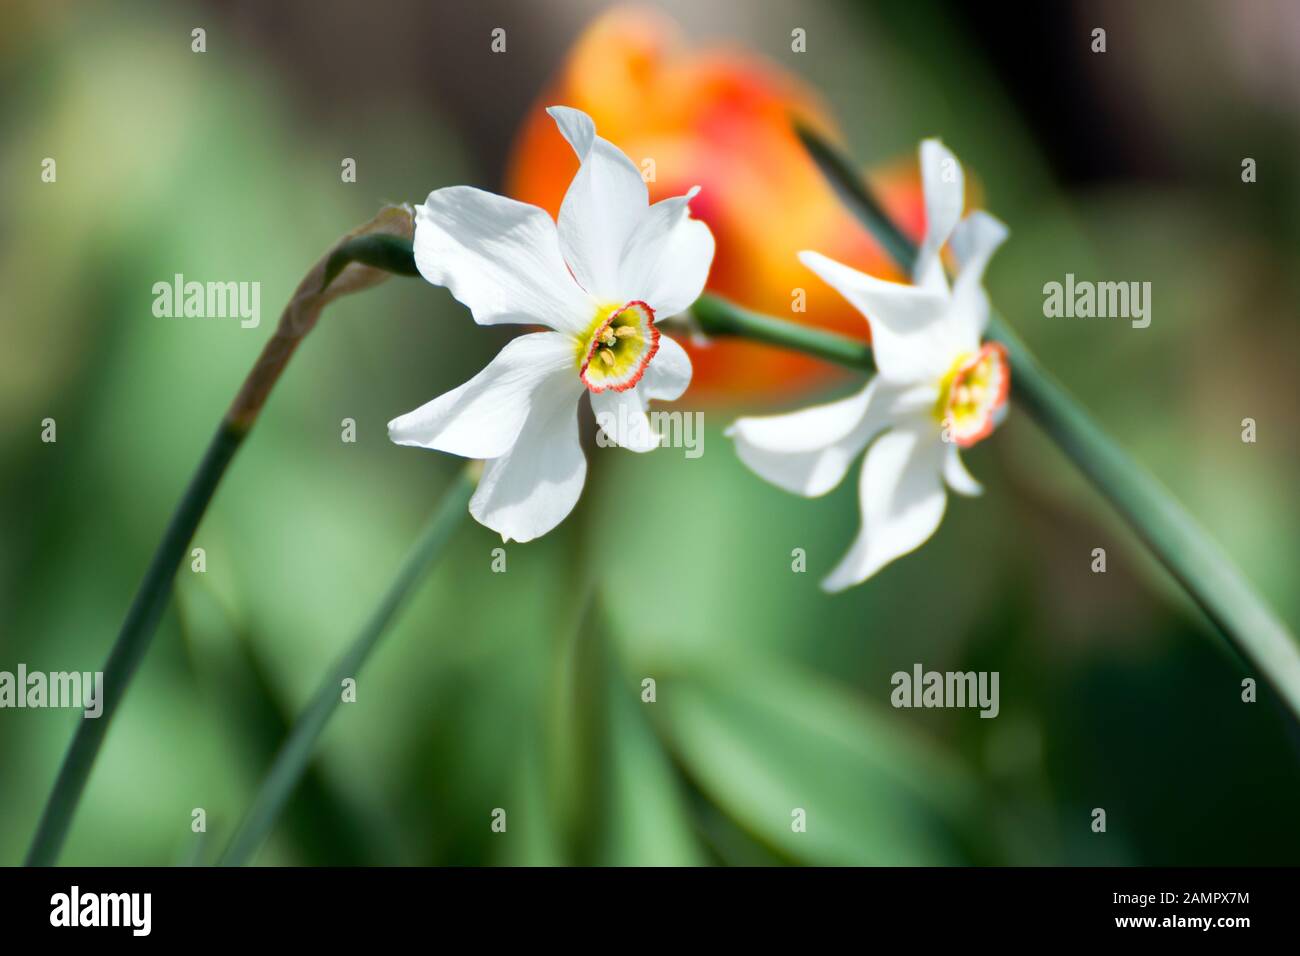 Belles fleurs blanches de printemps photographiées en profil. Ils sont appelés Narcisse poeticus ou narcisse du poète. Une tulipe rouge est prise en bokeh. Banque D'Images